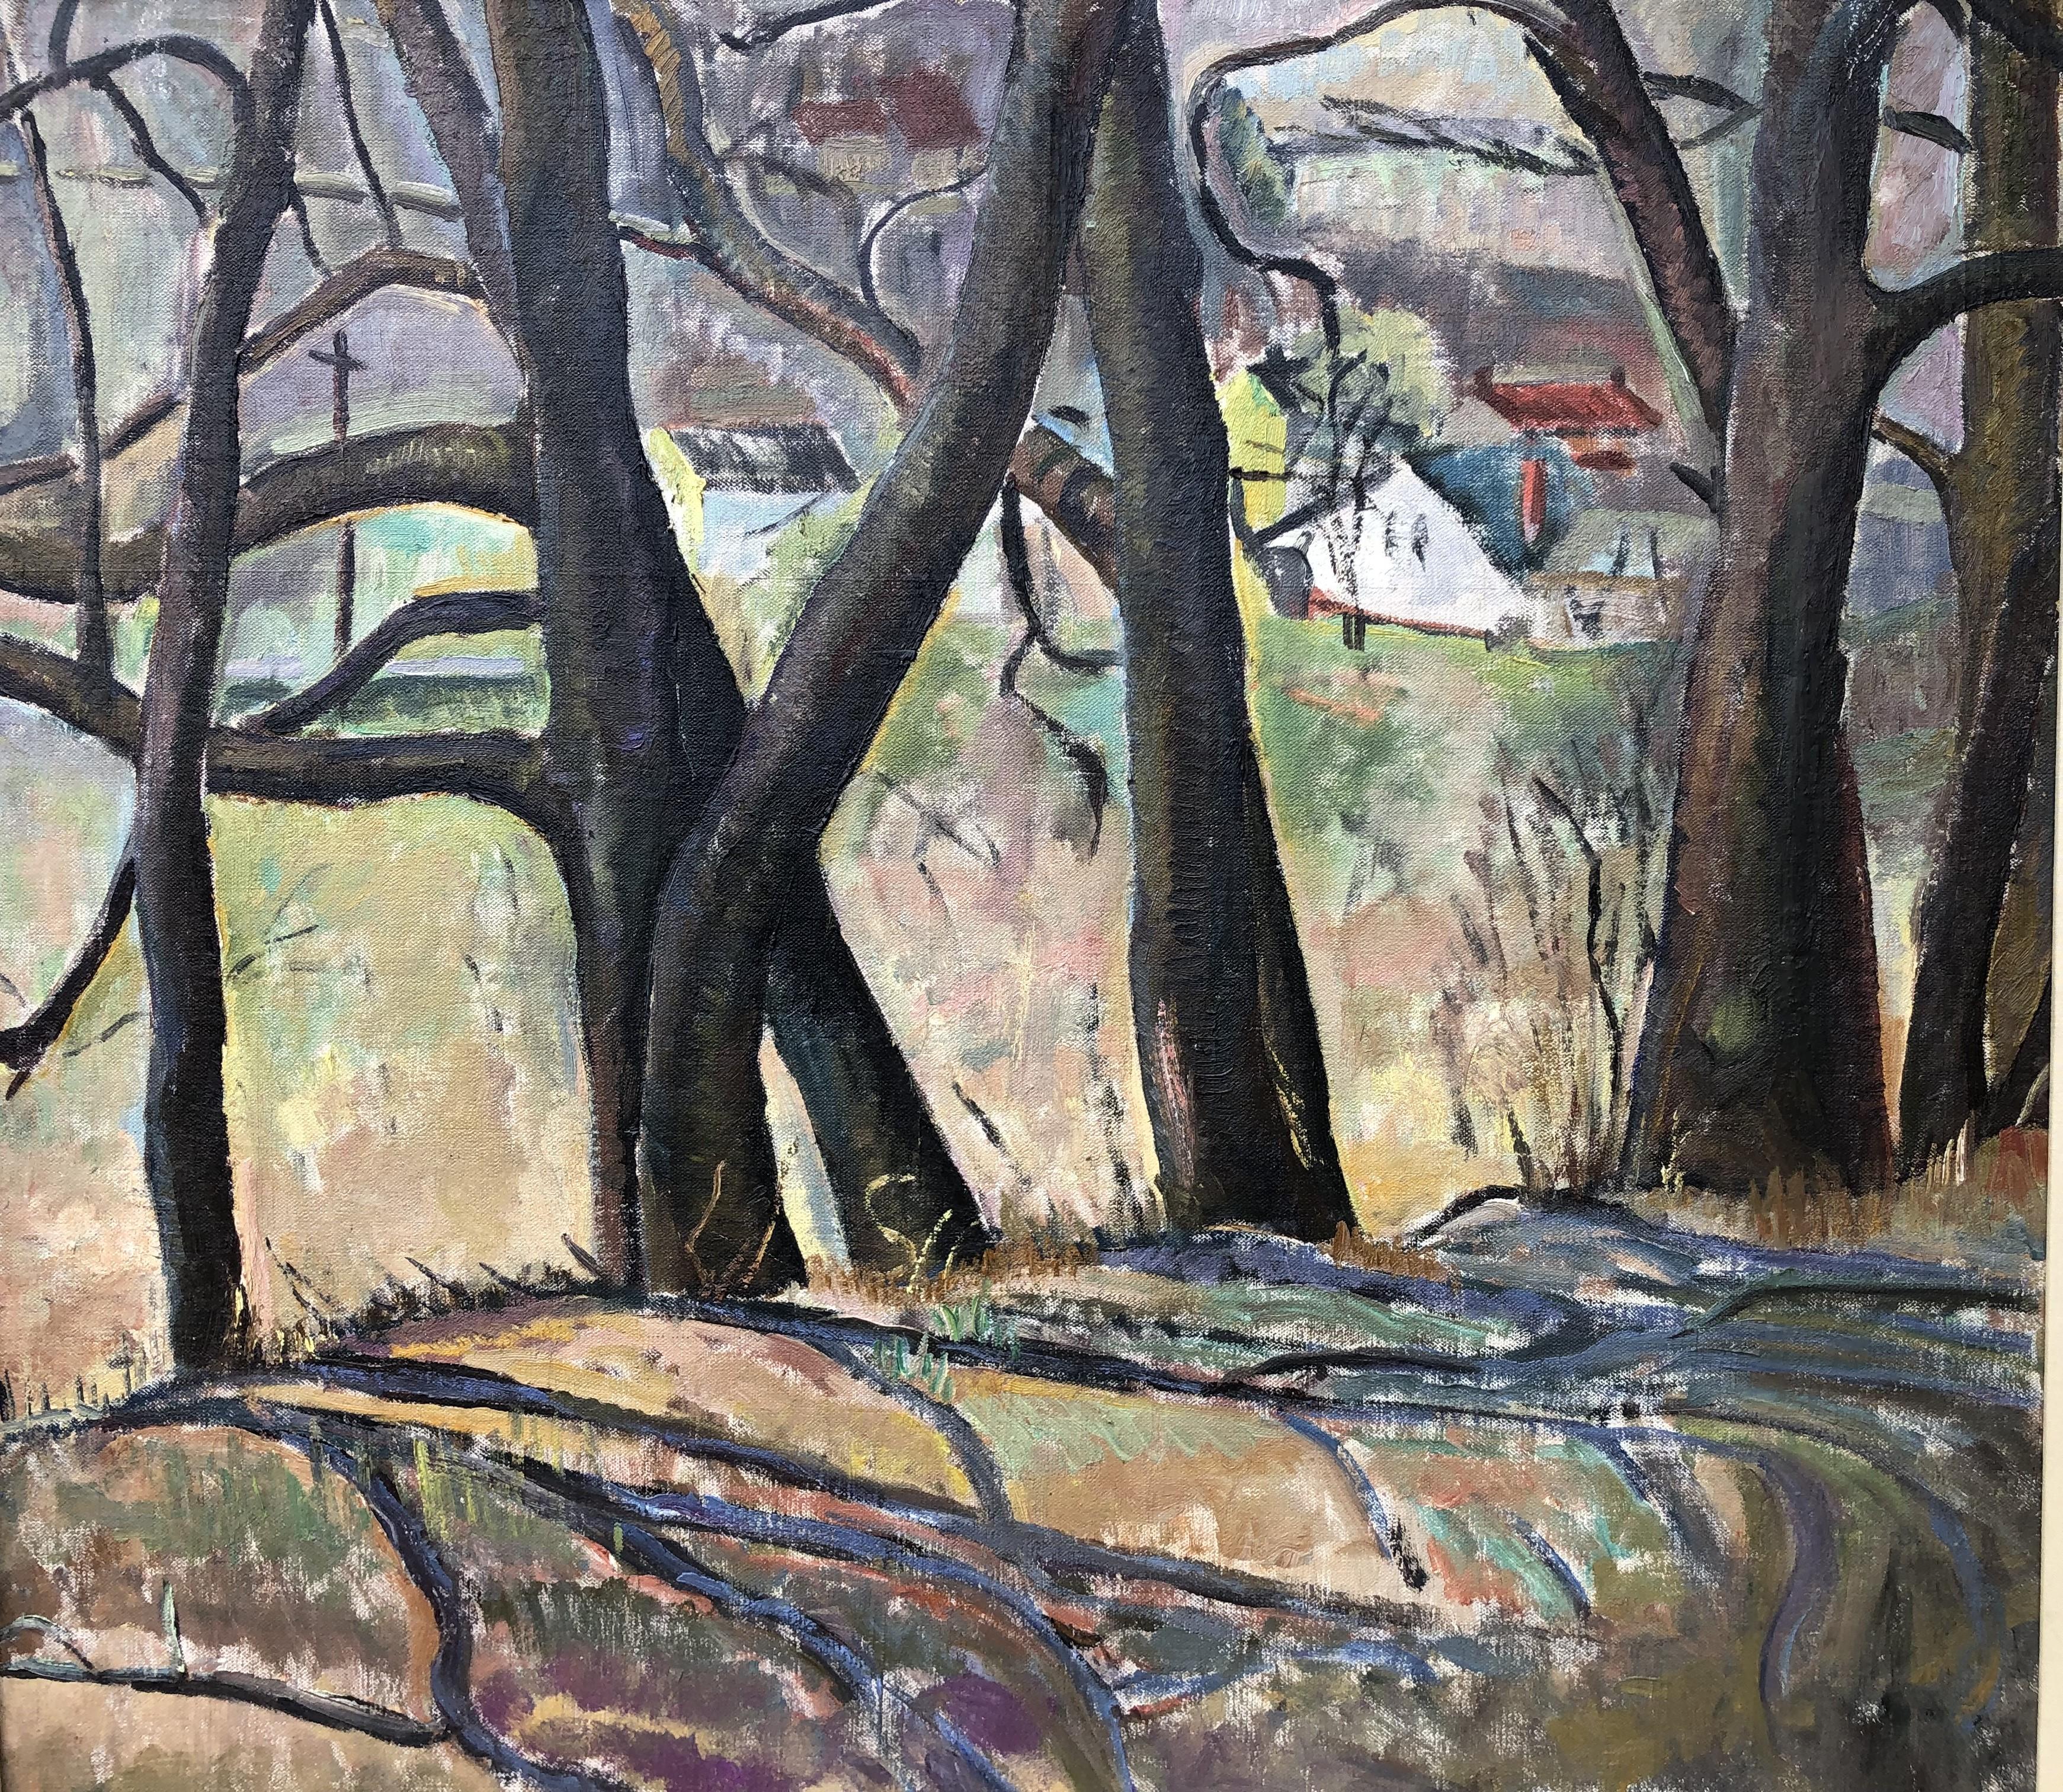 Schöne modernistische/impressionistische Landschaft von Marian Butler Ewald. Das Gemälde ist Öl auf Leinwand und misst 24